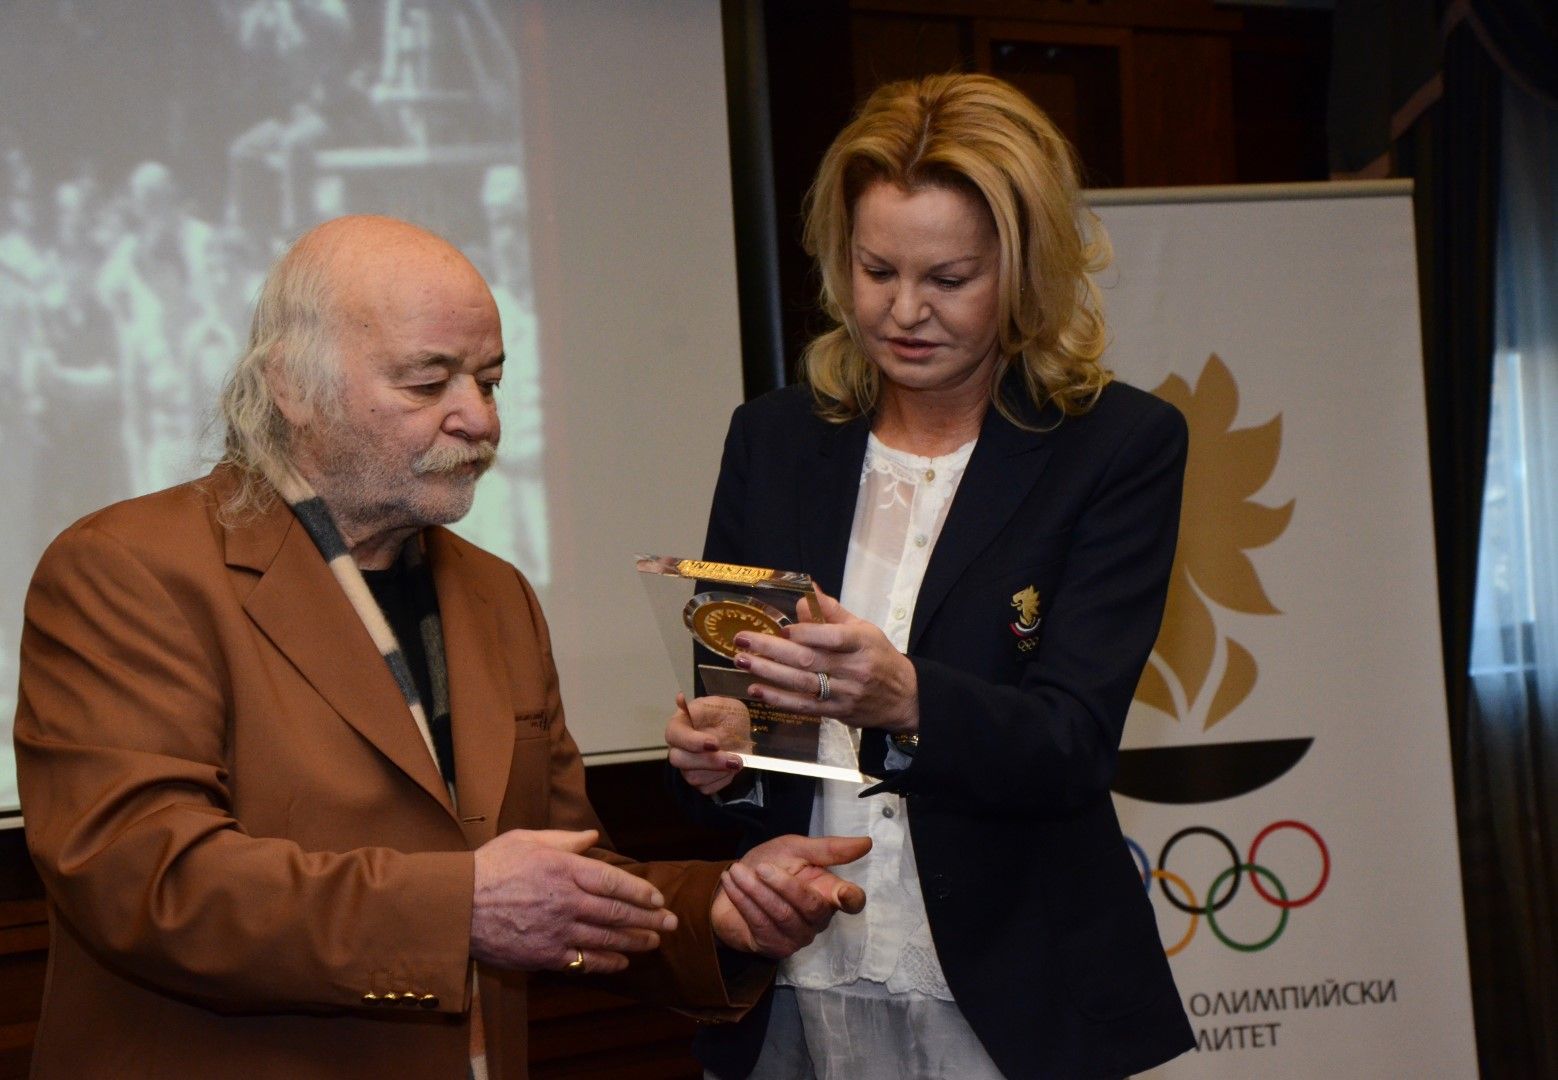 Боян Радев показва наградата си на Стефка Костадинова